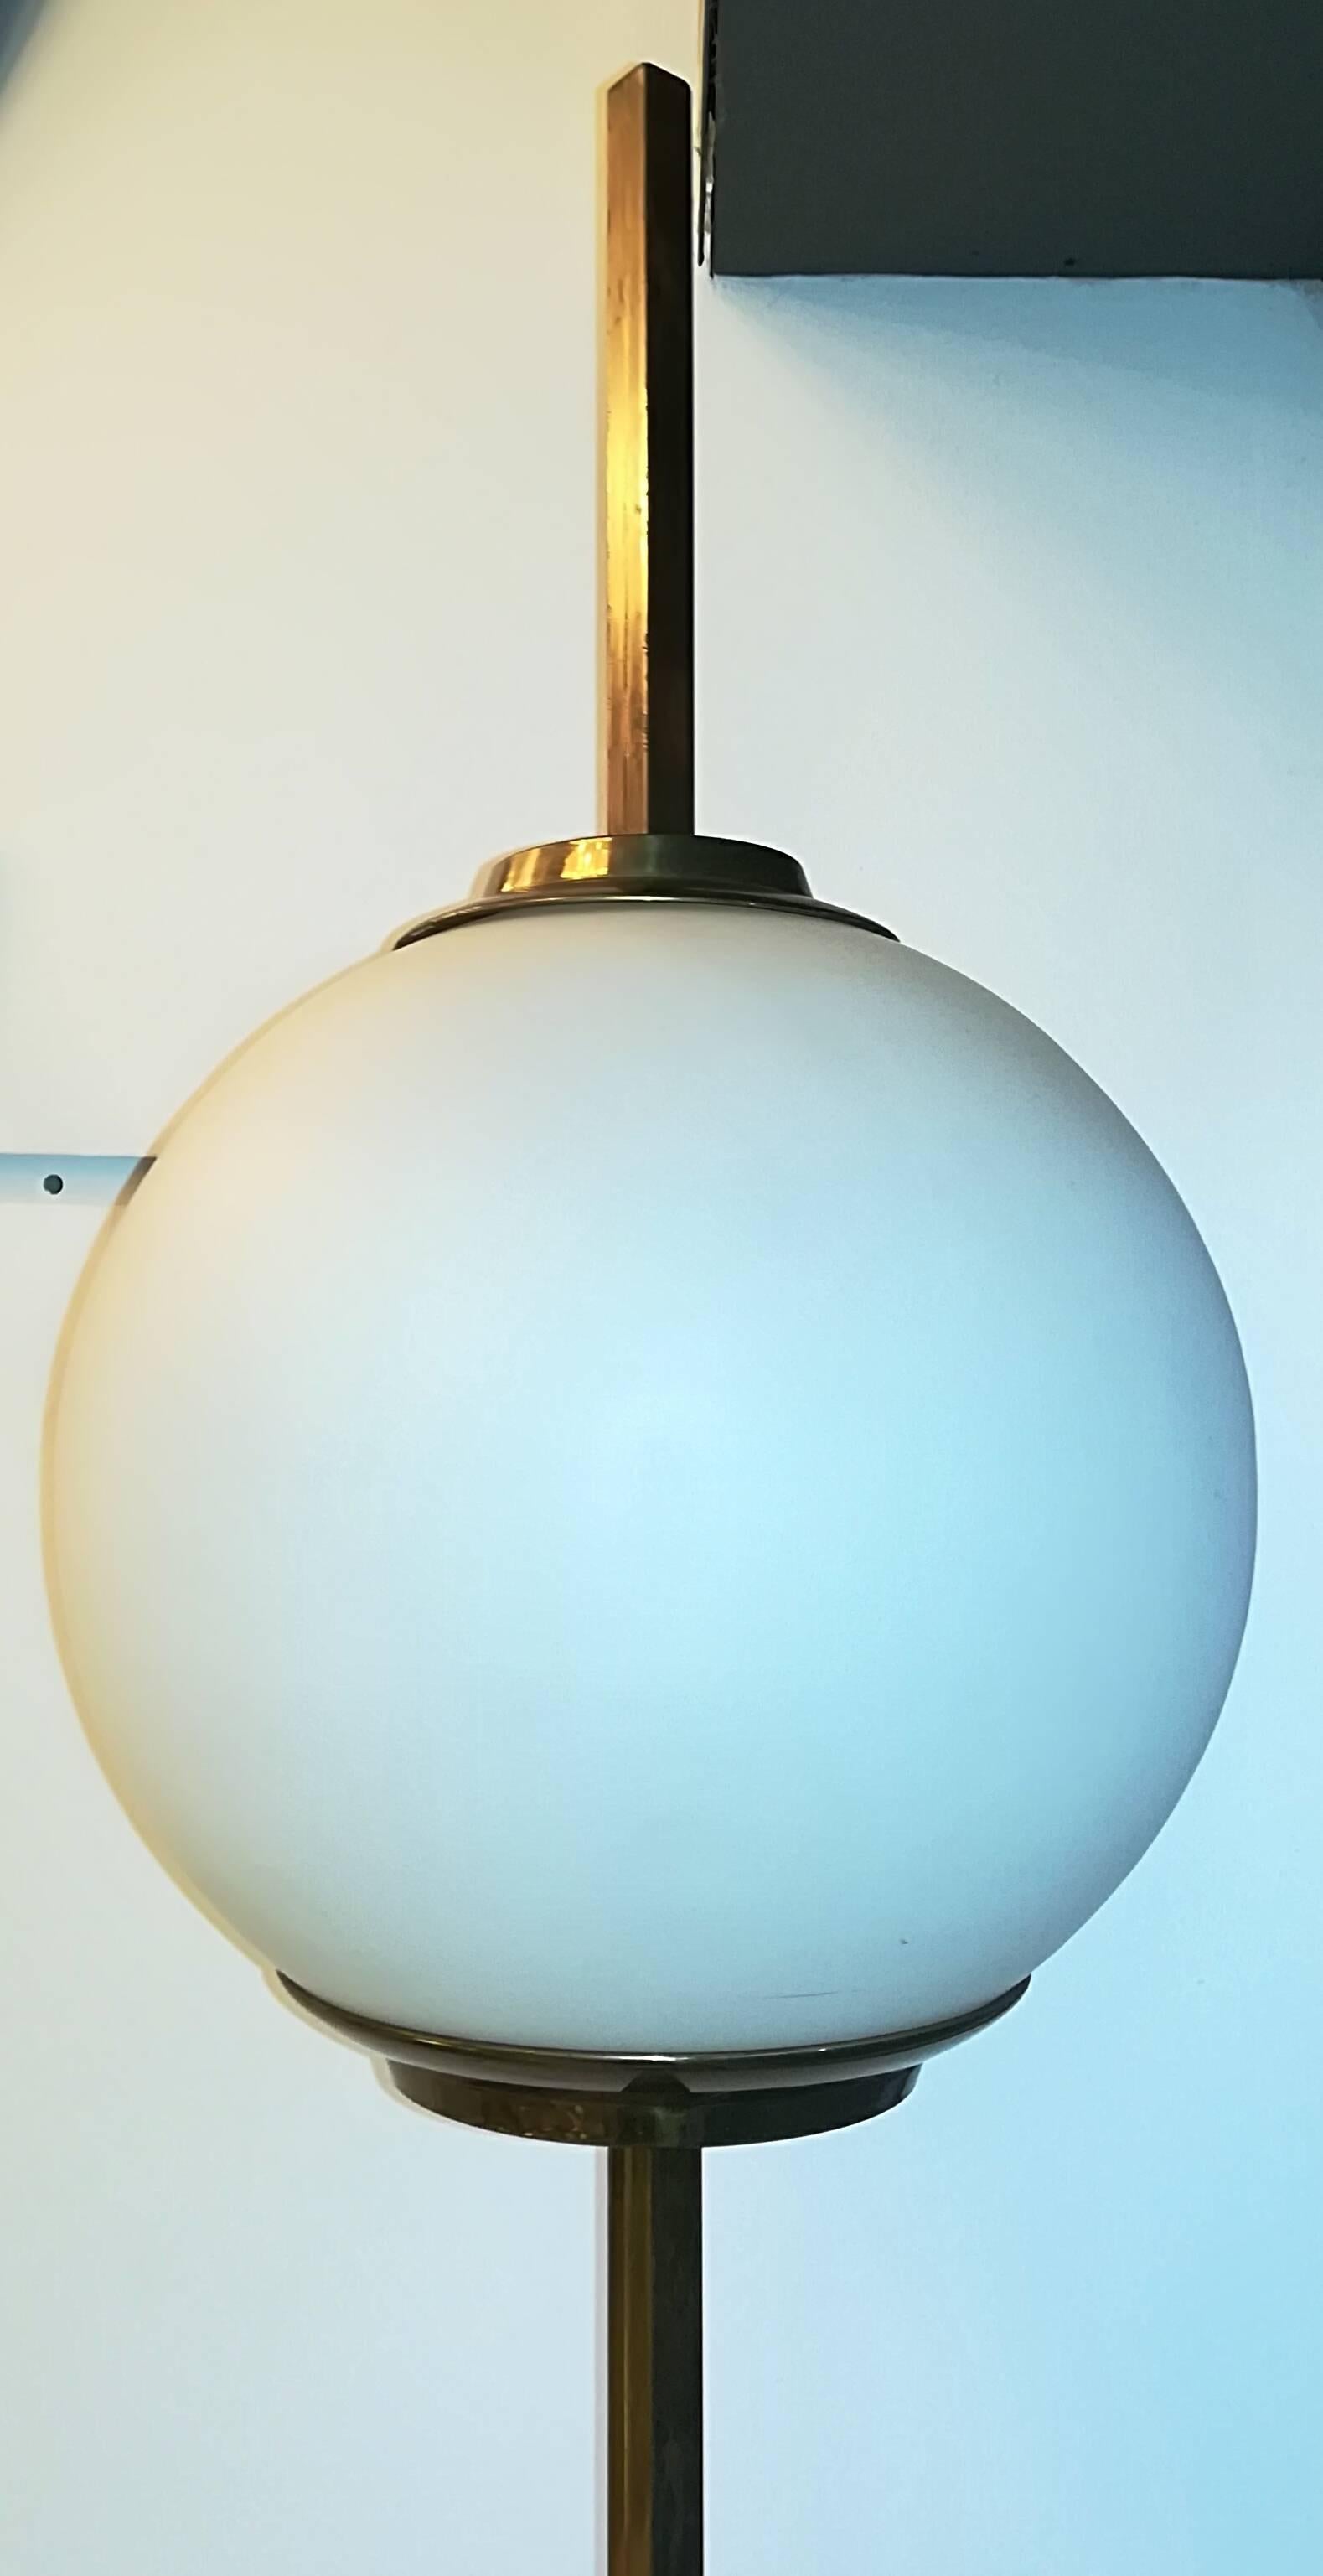 Italian Luigi Caccia Dominioni Floor Lamp 1954 Lte 10 Brass Glass Marbre